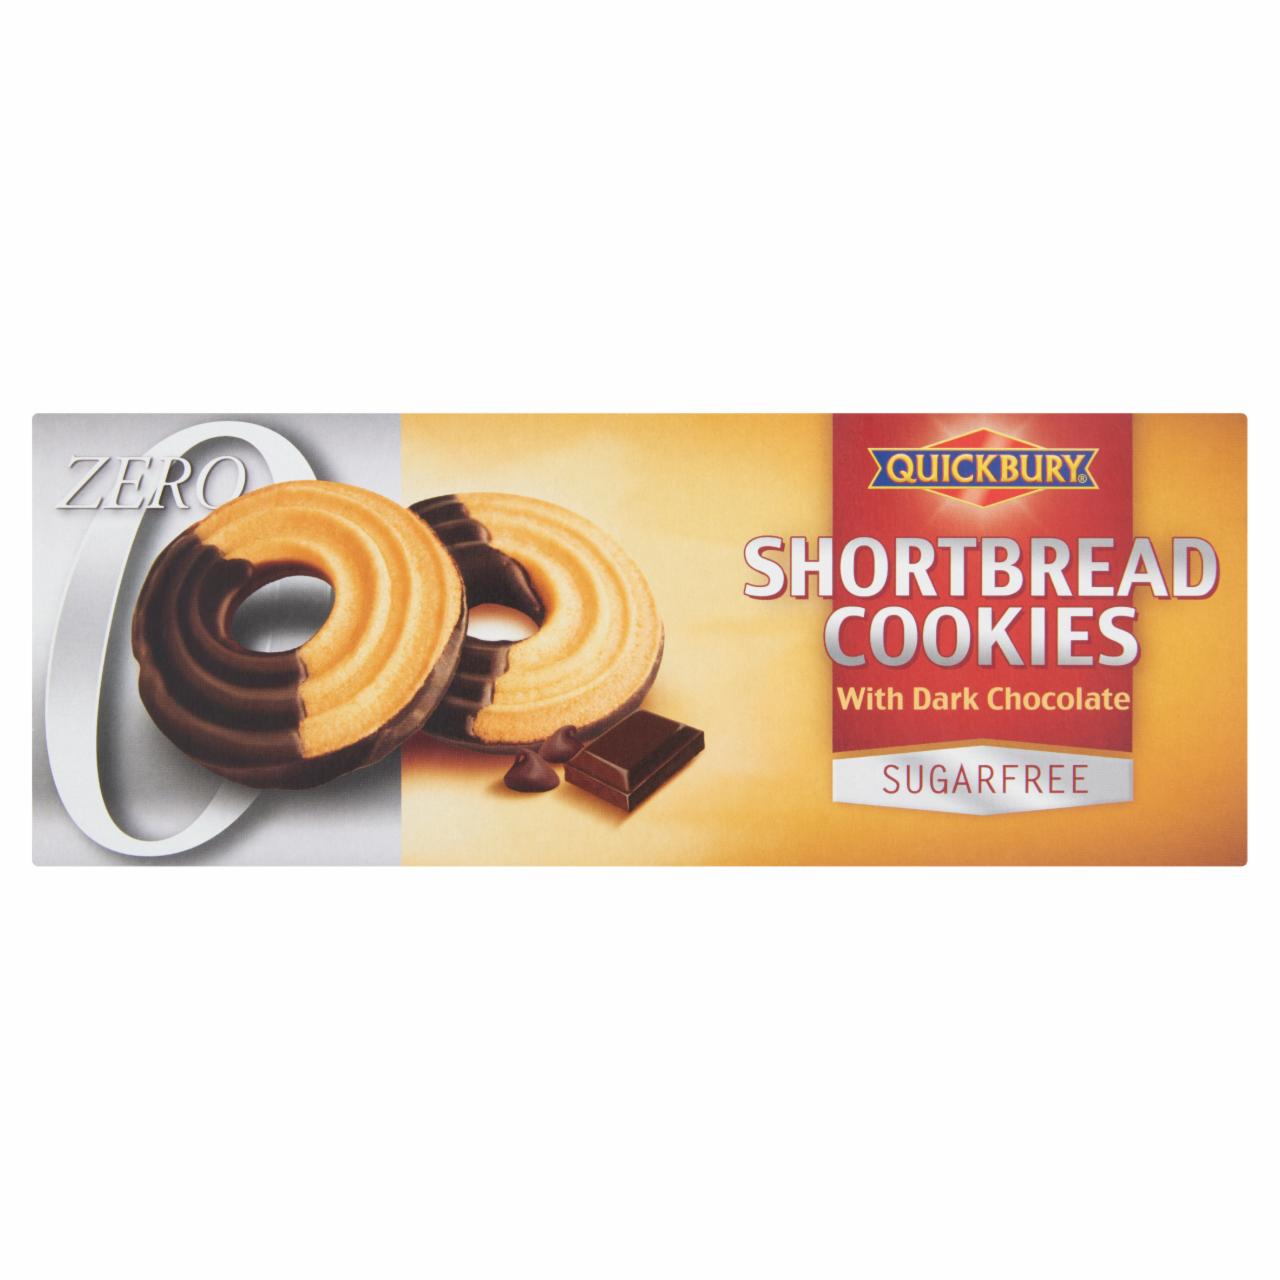 Képek - Quickbury Zero cukormentes sütemény csokoládé jellegű bevonattal 125 g